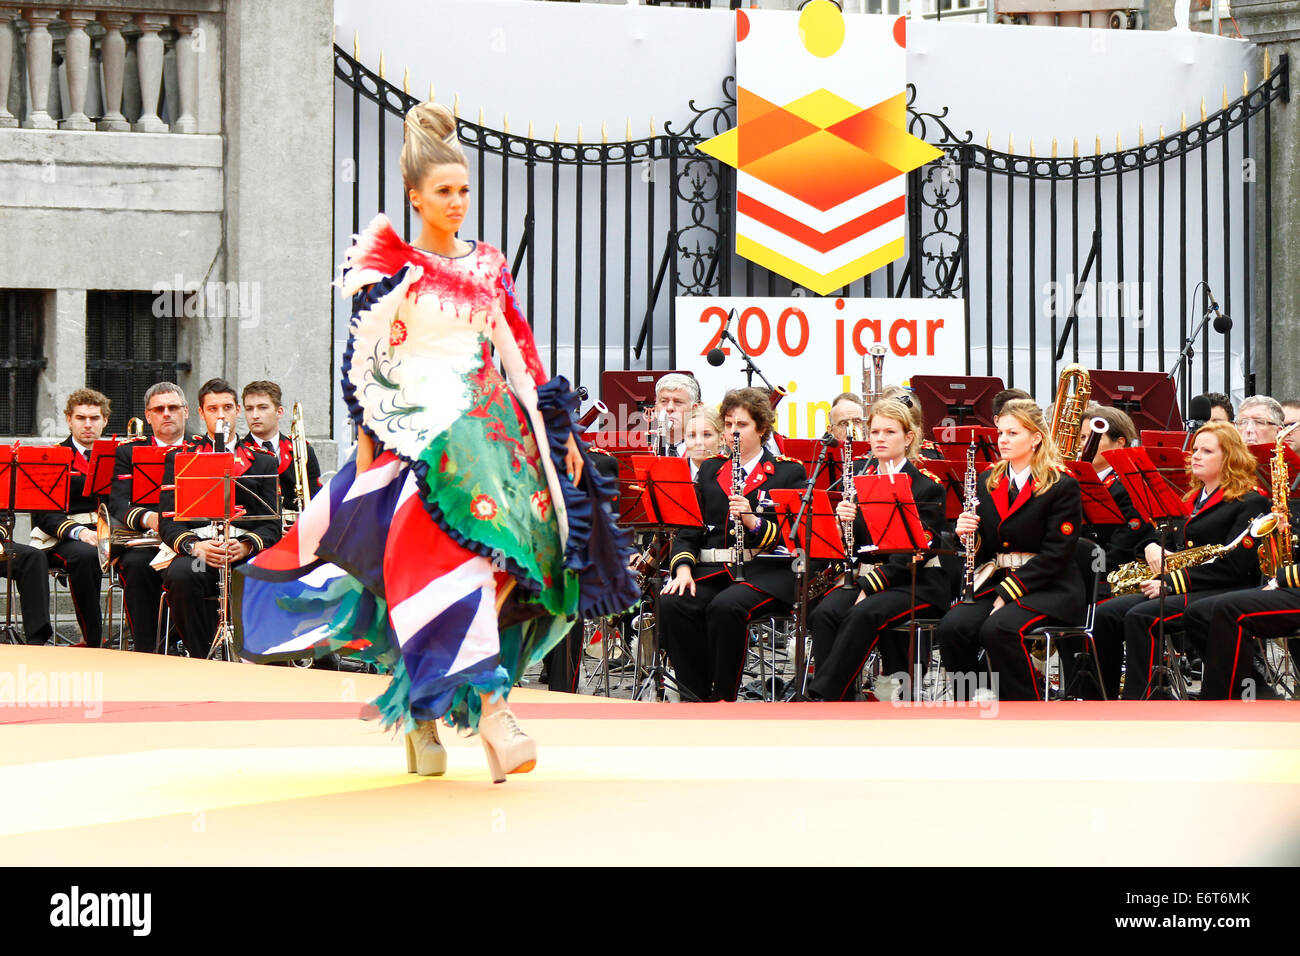 Maastricht, Pays-Bas. 30e Août, 2014. Un modèle assiste au spectacle fashiong 'Hello, World' pour célébrer les 200 ans du royaume des Pays-Bas à Maastricht le 30 août 2014. Source : Xinhua/Alamy Live News Banque D'Images